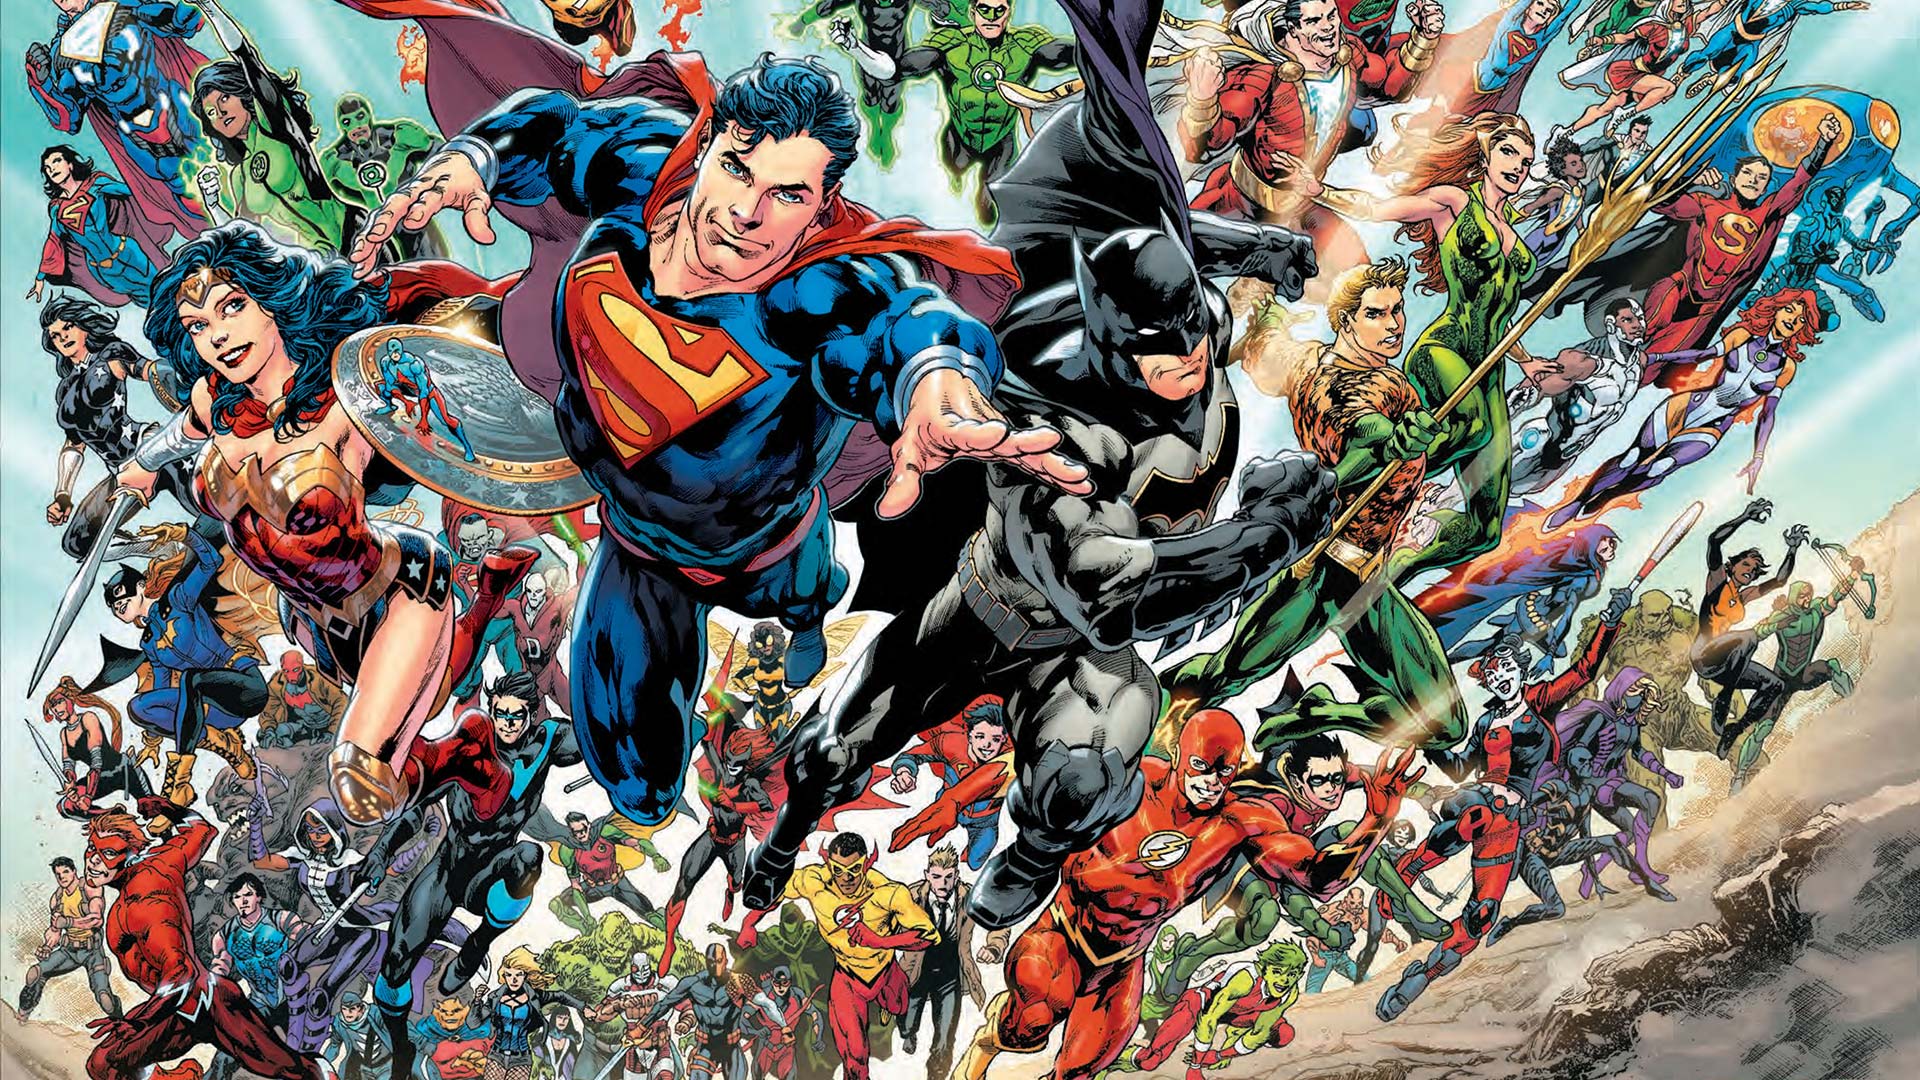 Cómo empezar a leer cómics DC? - MEW Magazine